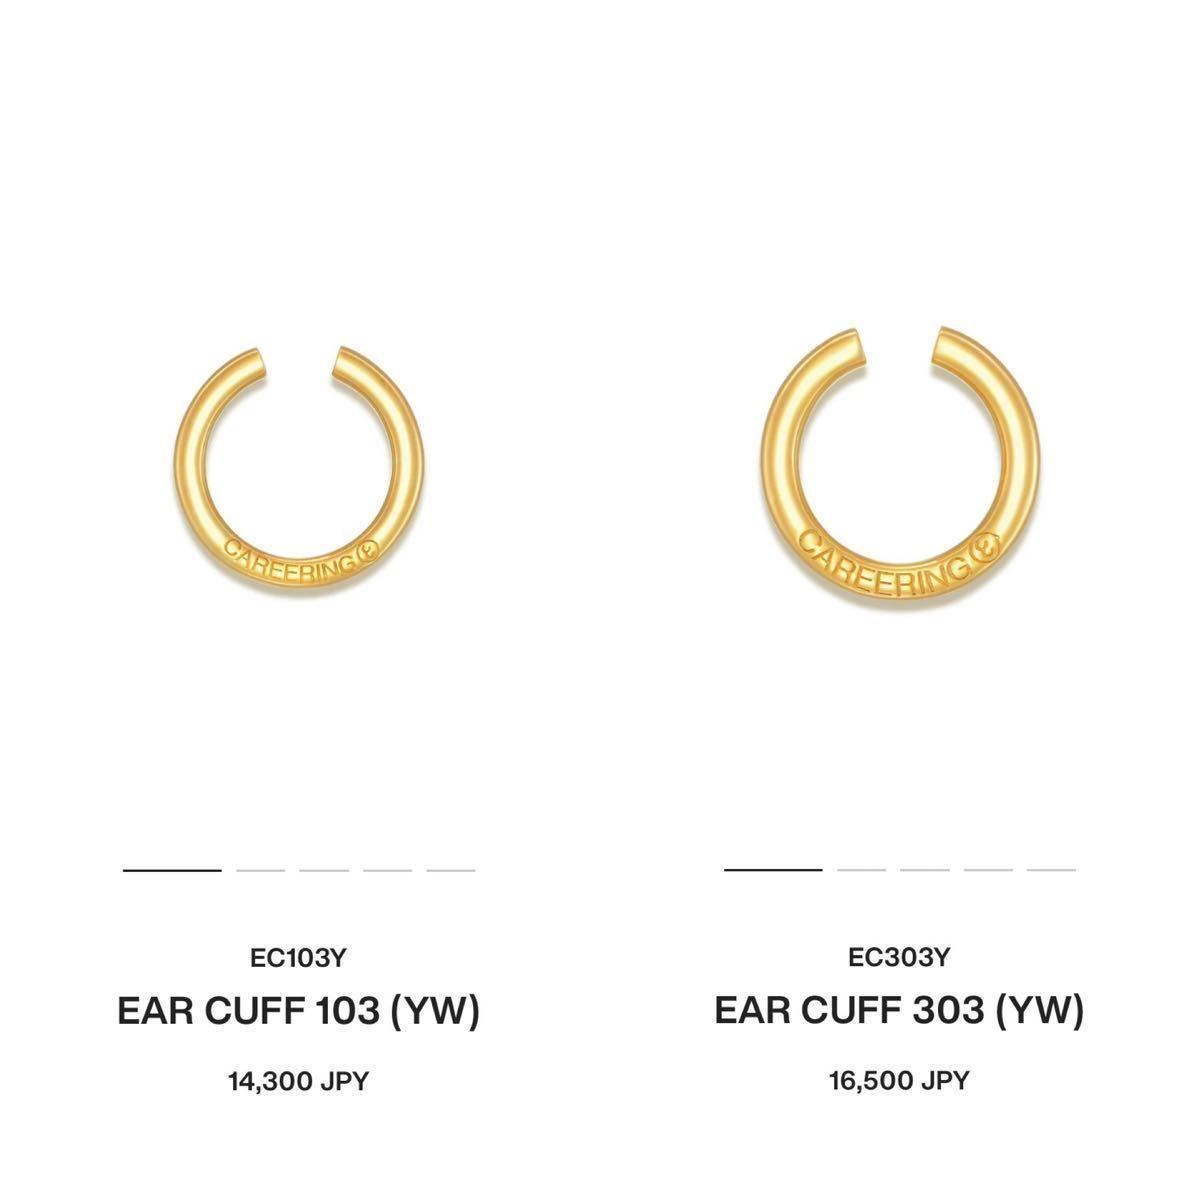 いラインアップ (YW) 303 & 103 CUFF EAR CAREERING 美品 定価¥14,300